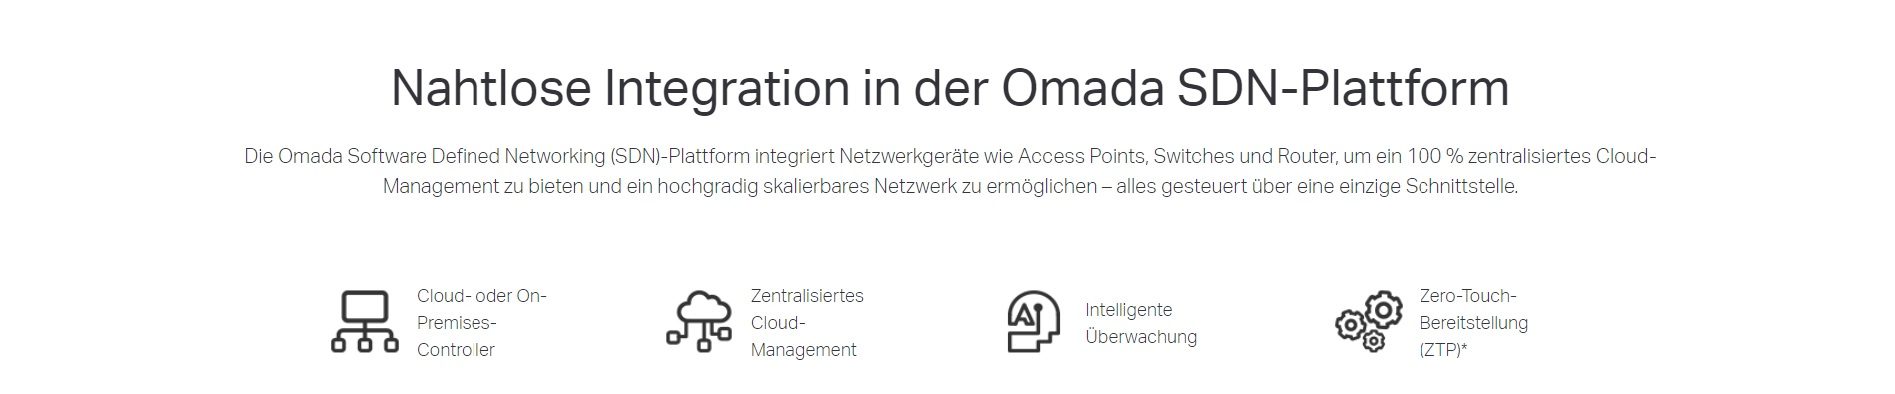 Nahtlose Integration in der Omada SDN-Plattform